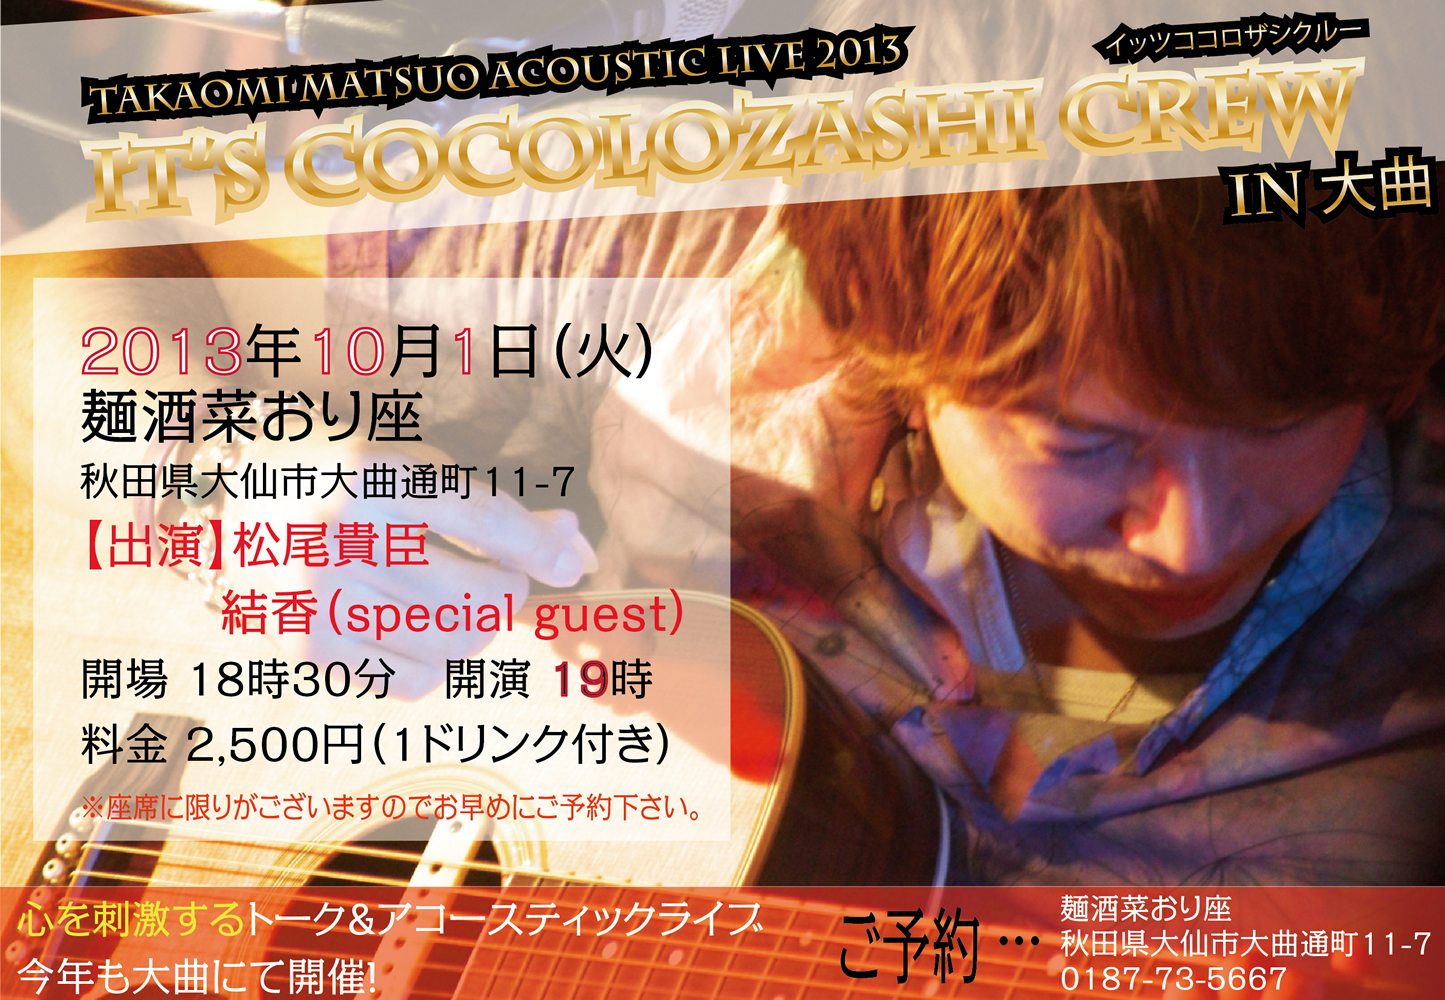 『TAKAOMI MATSUO ACOUSTIC LIVE 2013 It's Cocolozashi Crew vol.24 In 大曲 』